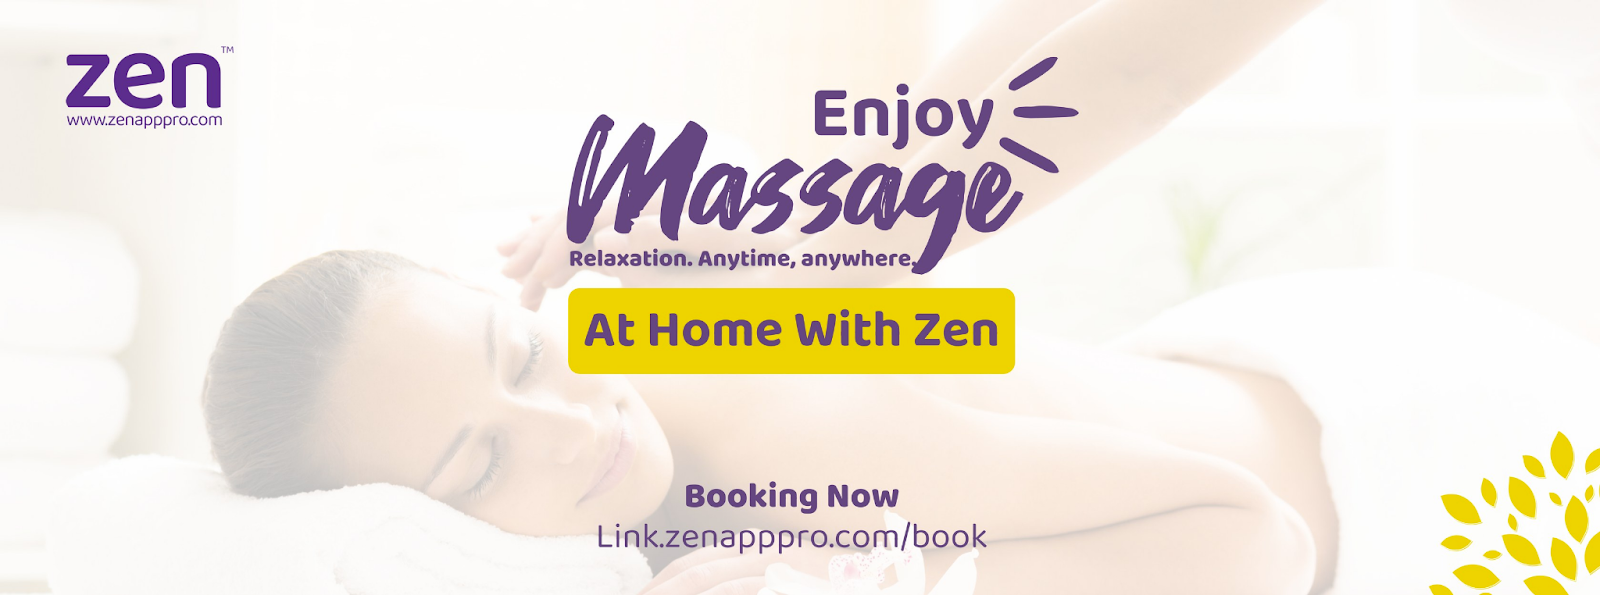 Massage tận nơi dễ dàng cùn Zen 